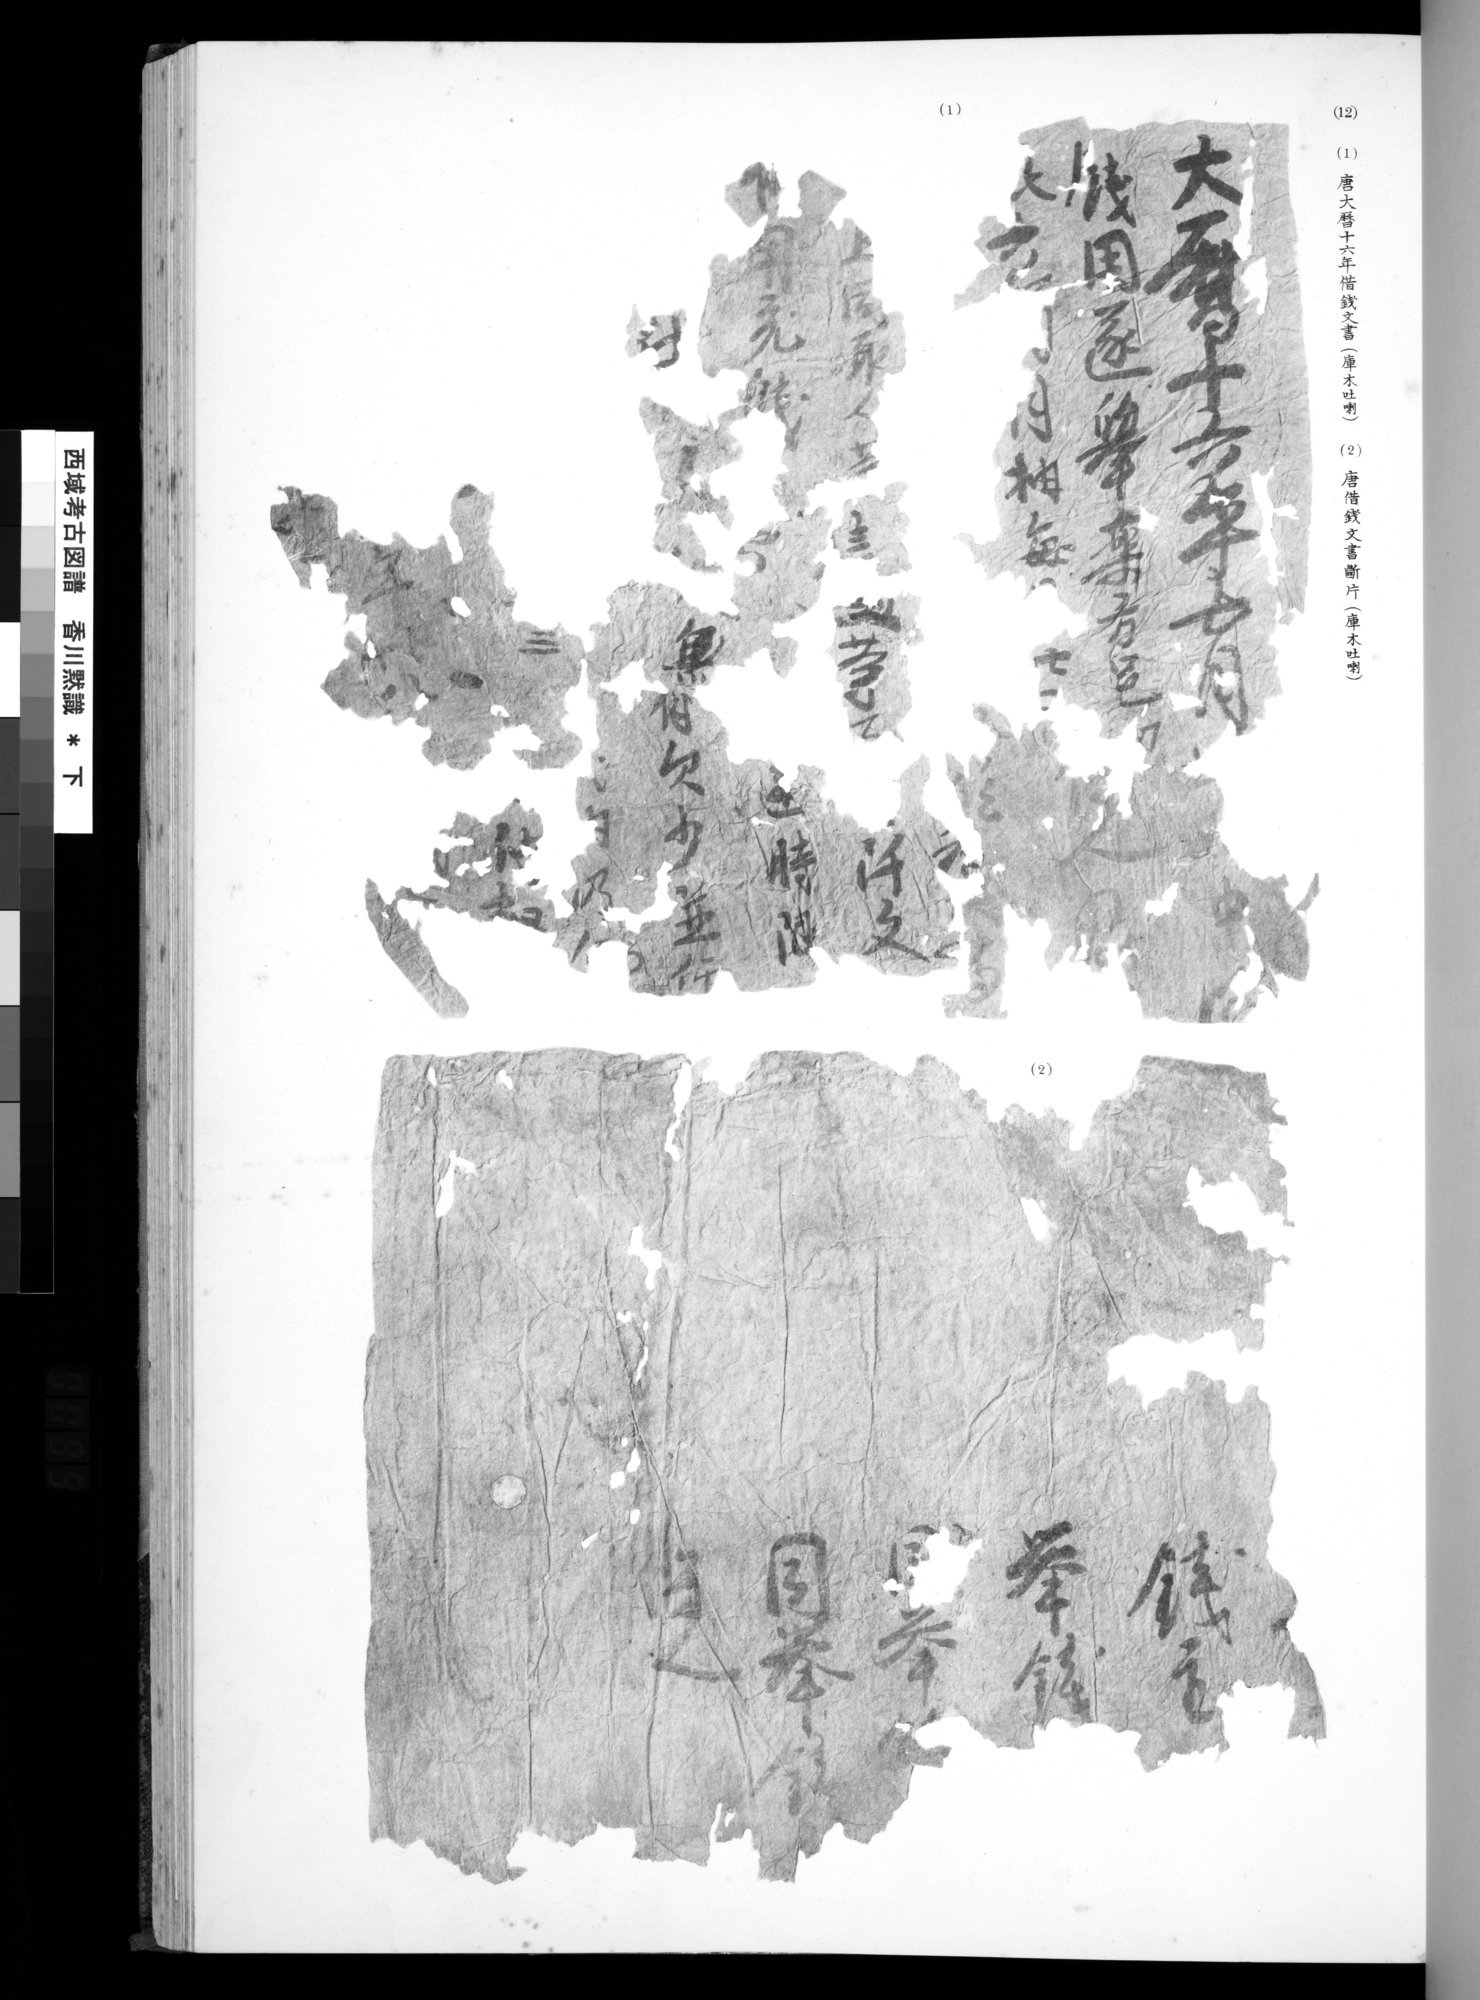 西域考古図譜 : vol.2 / 197 ページ（白黒高解像度画像）